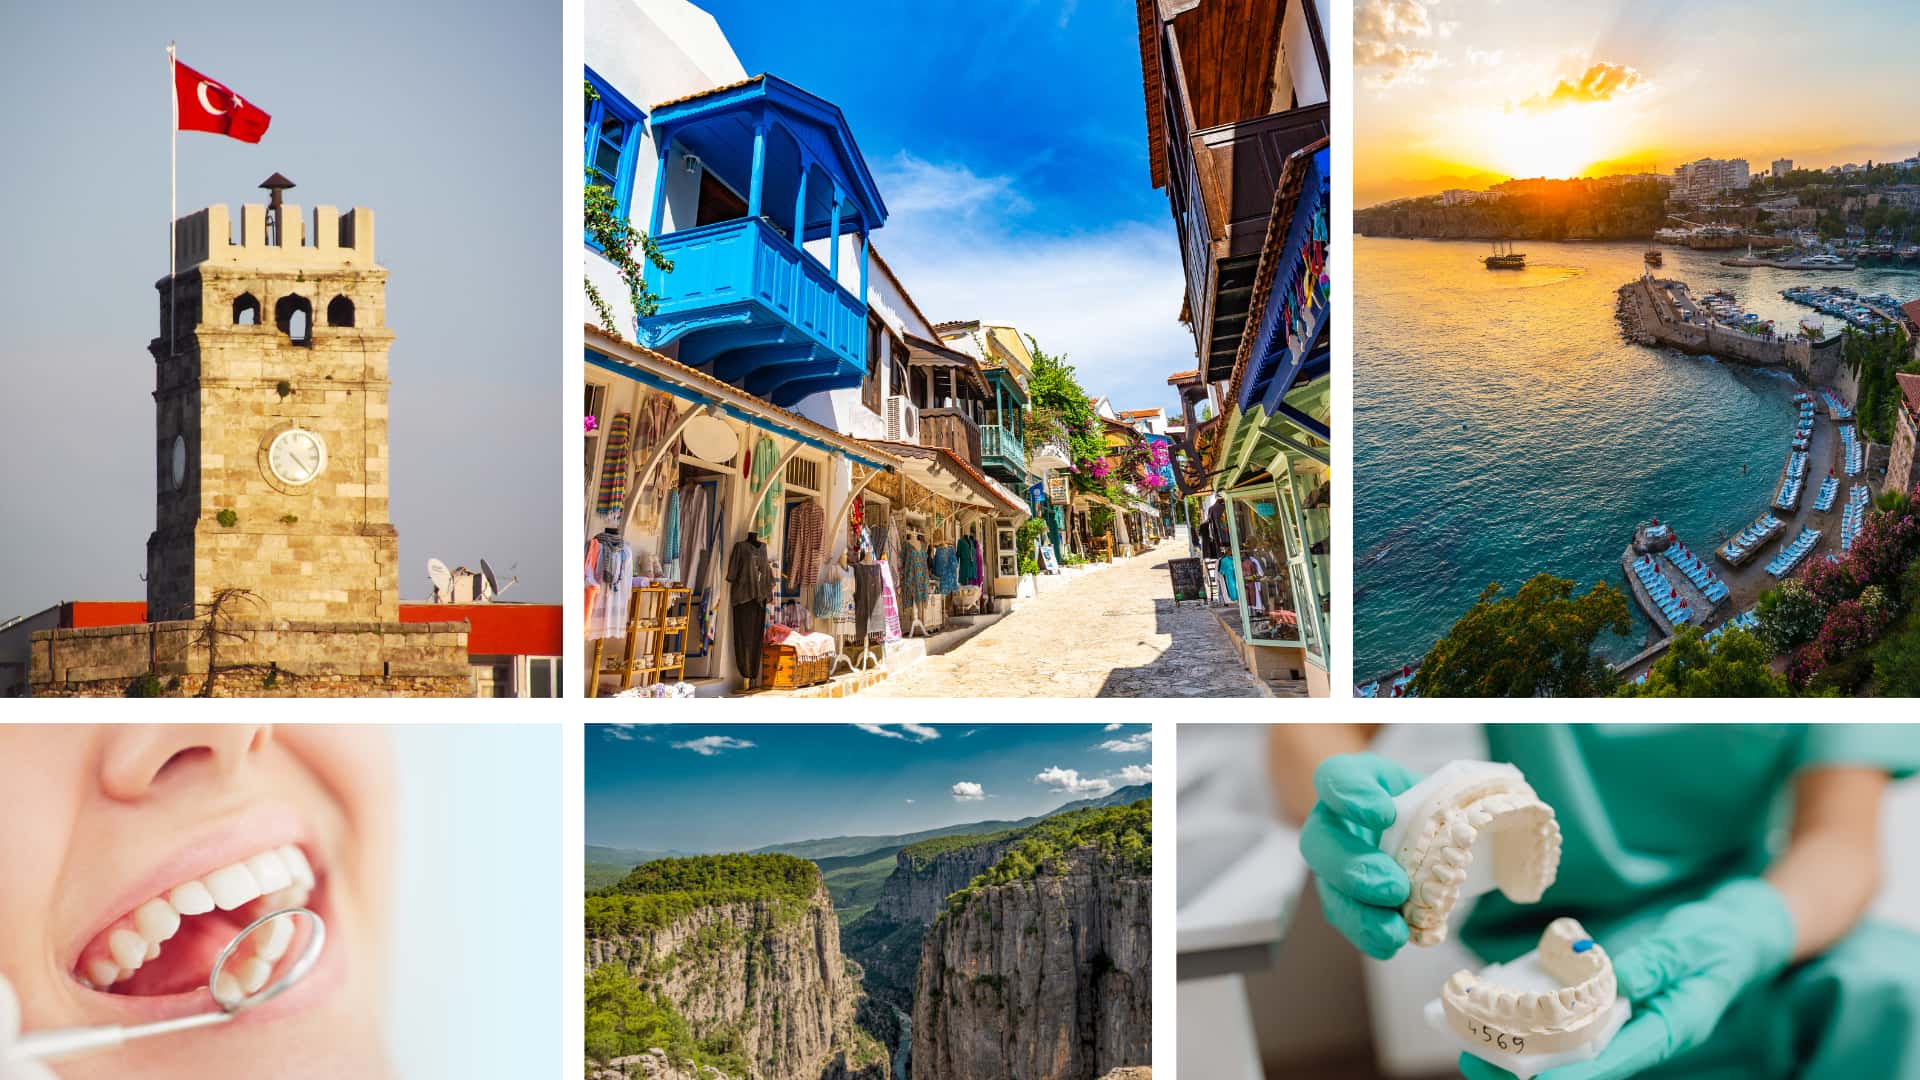 Antalya worldwide paradise